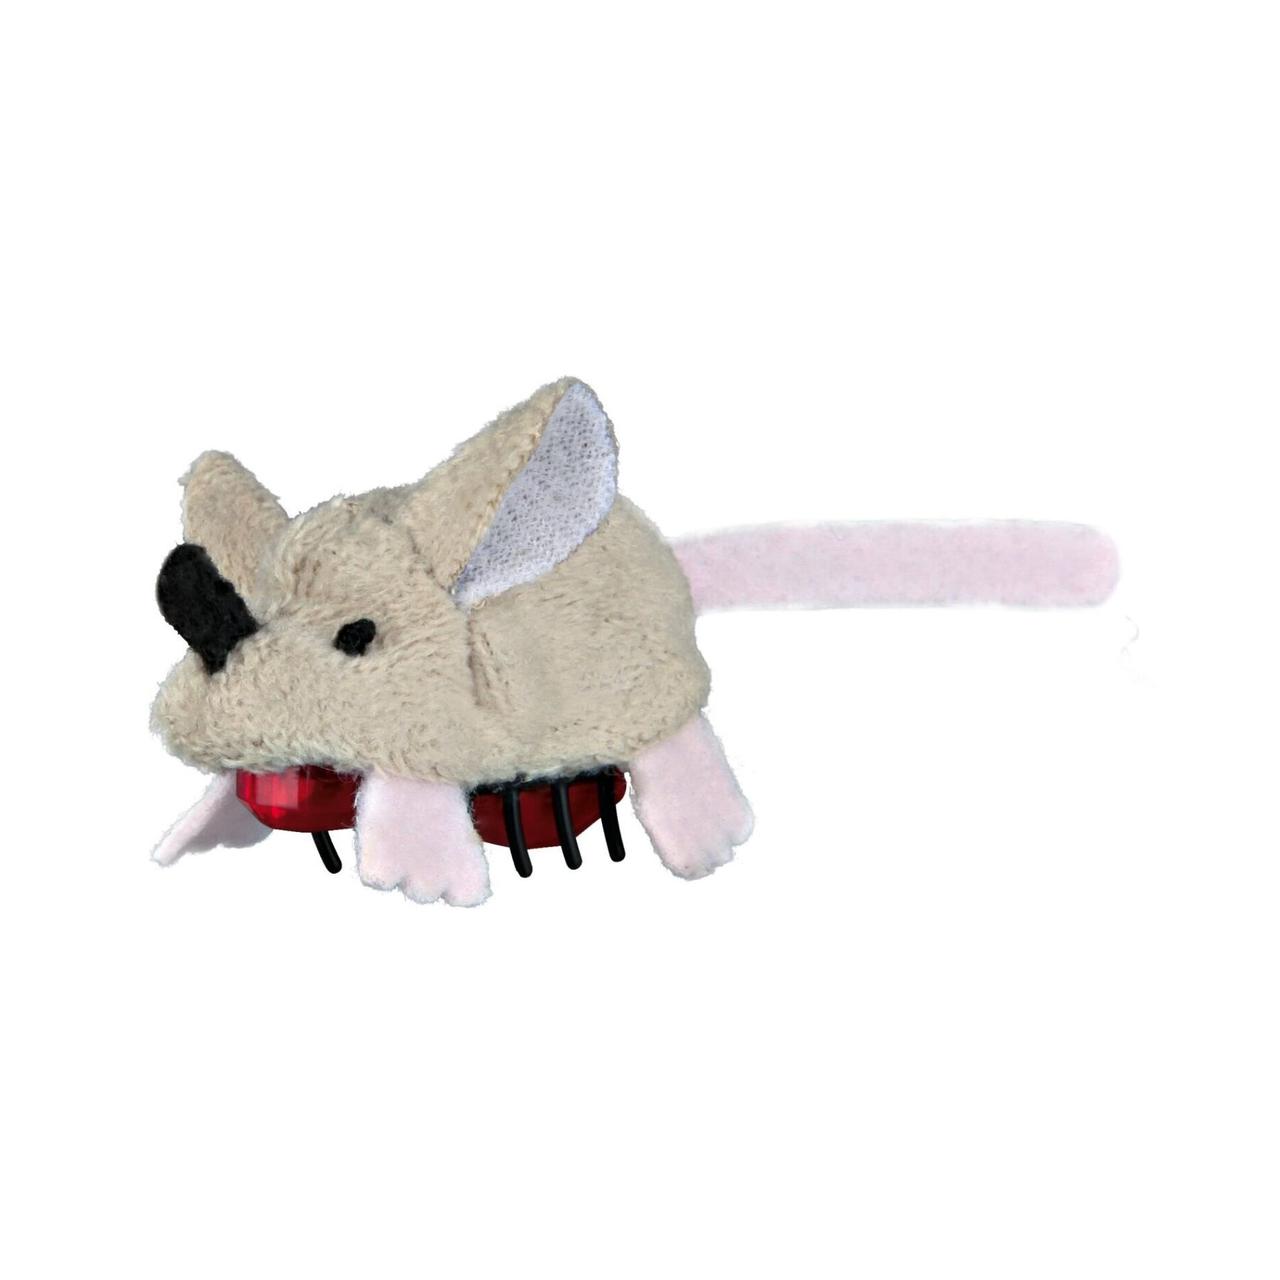 Двигающая мышь. Мышь для кошек Trixie 45587. Мышь для кошек Trixie 4073os. Интерактивная мышка на батарейках. Бегающая мышь игрушка для кошек.